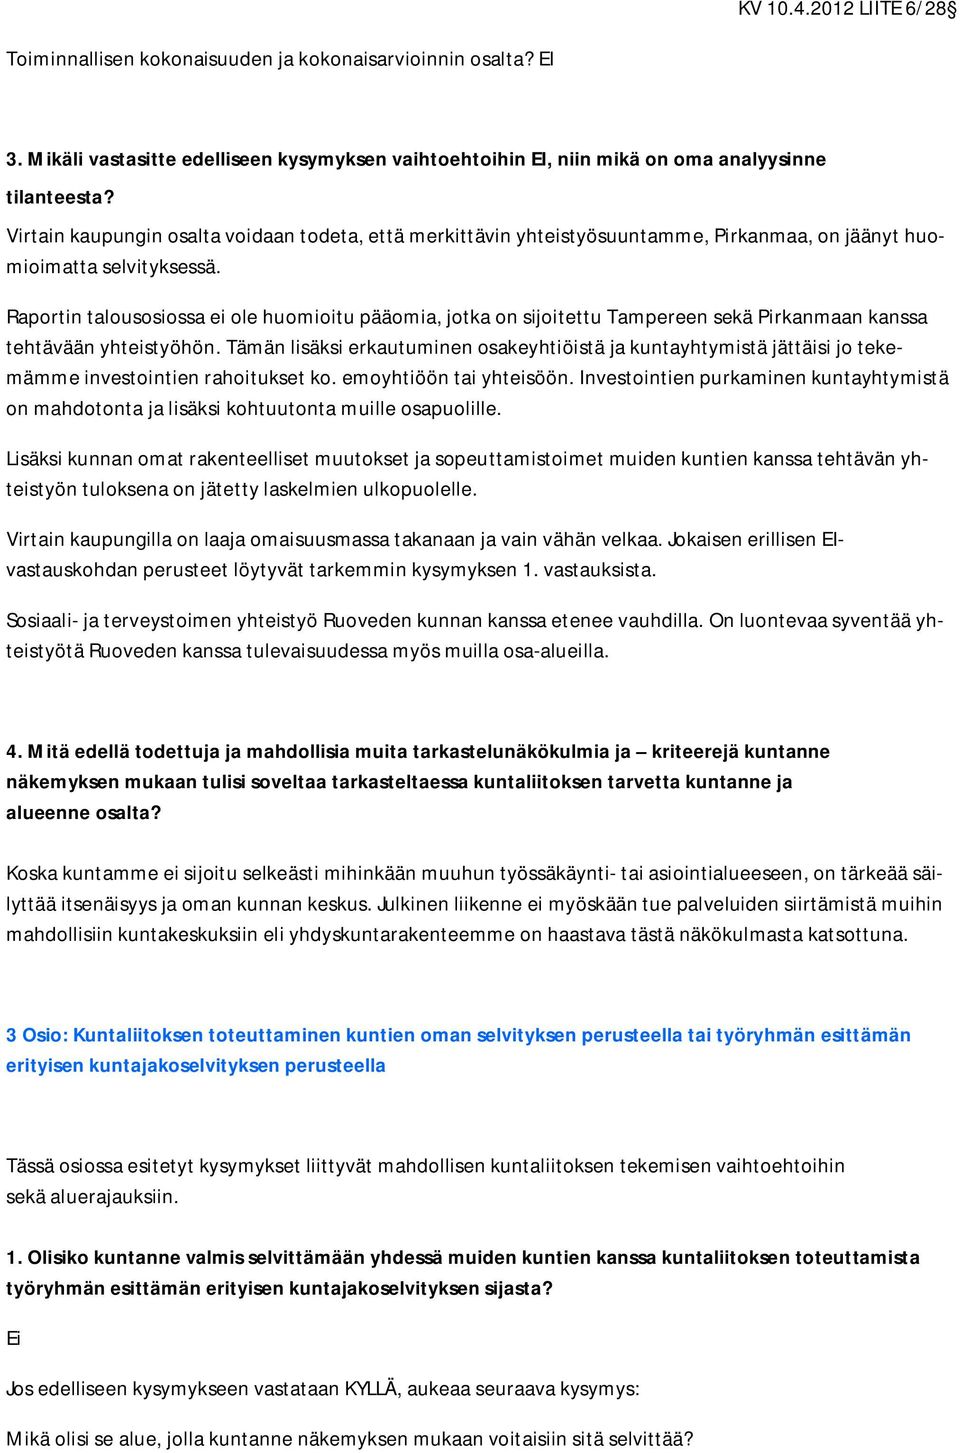 Raportin talousosiossa ei ole huomioitu pääomia, jotka on sijoitettu Tampereen sekä Pirkanmaan kanssa tehtävään yhteistyöhön.